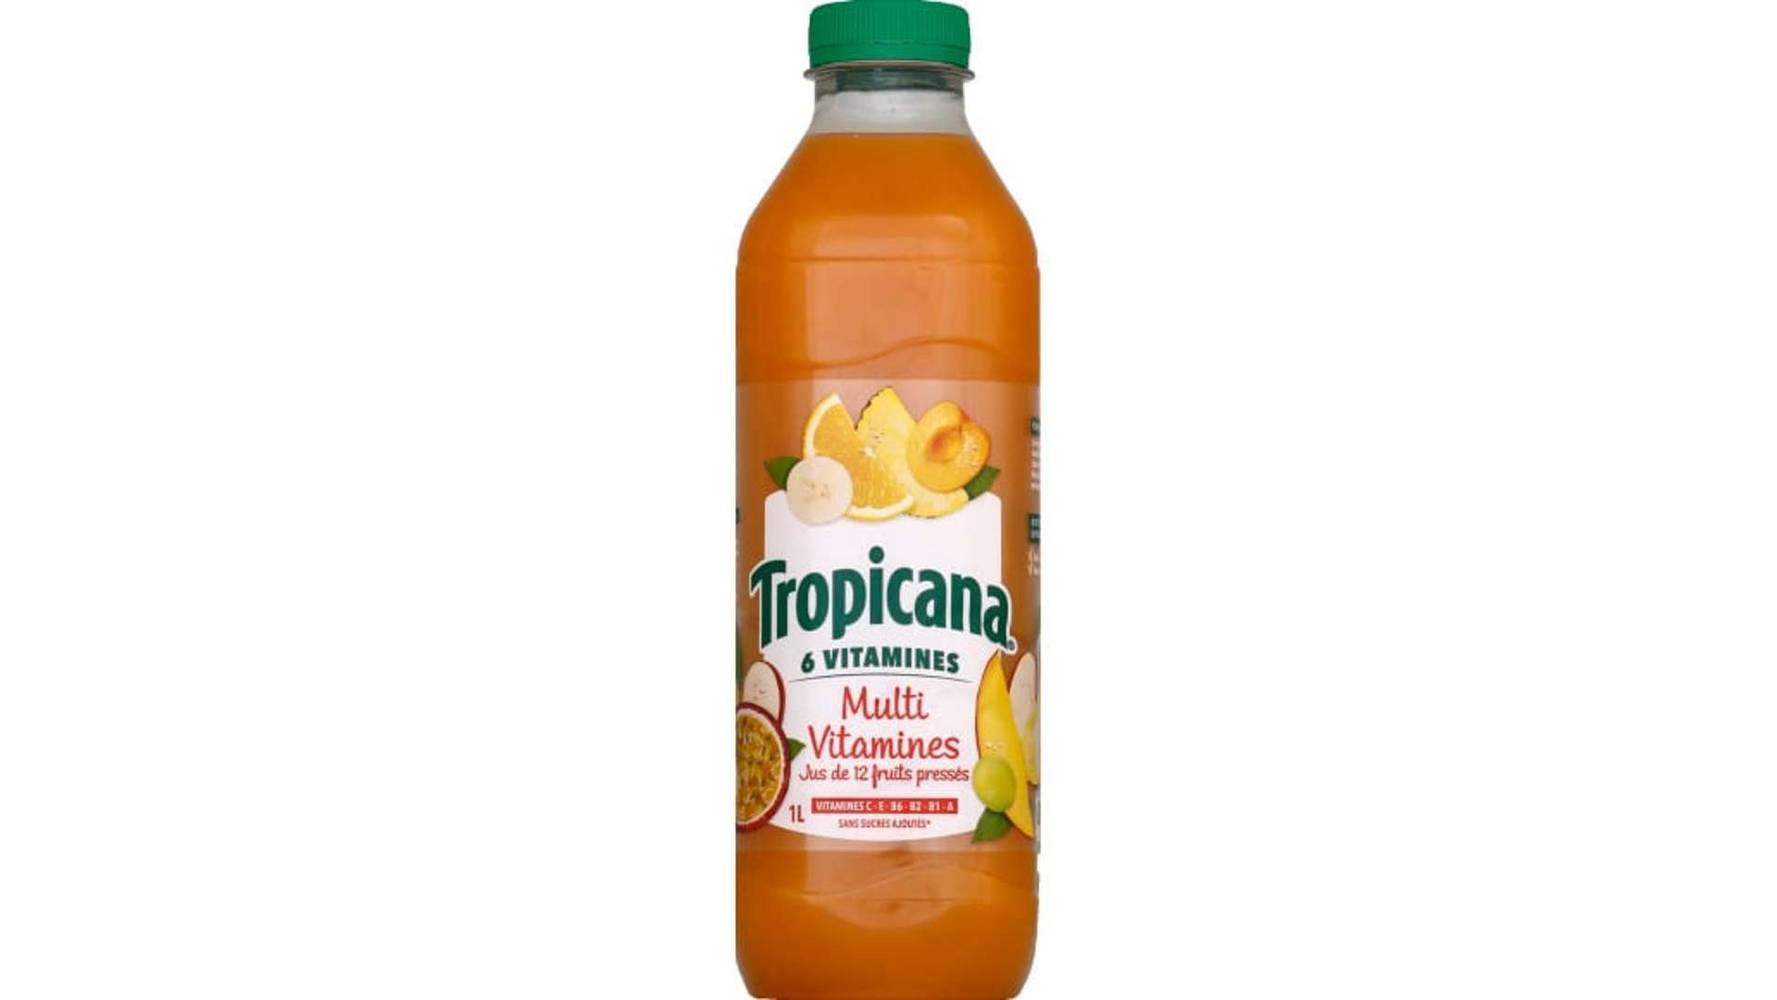 Tropicana Multivitamines, Jus de 12 fruits sans sucres ajoutés La bouteille de 1L